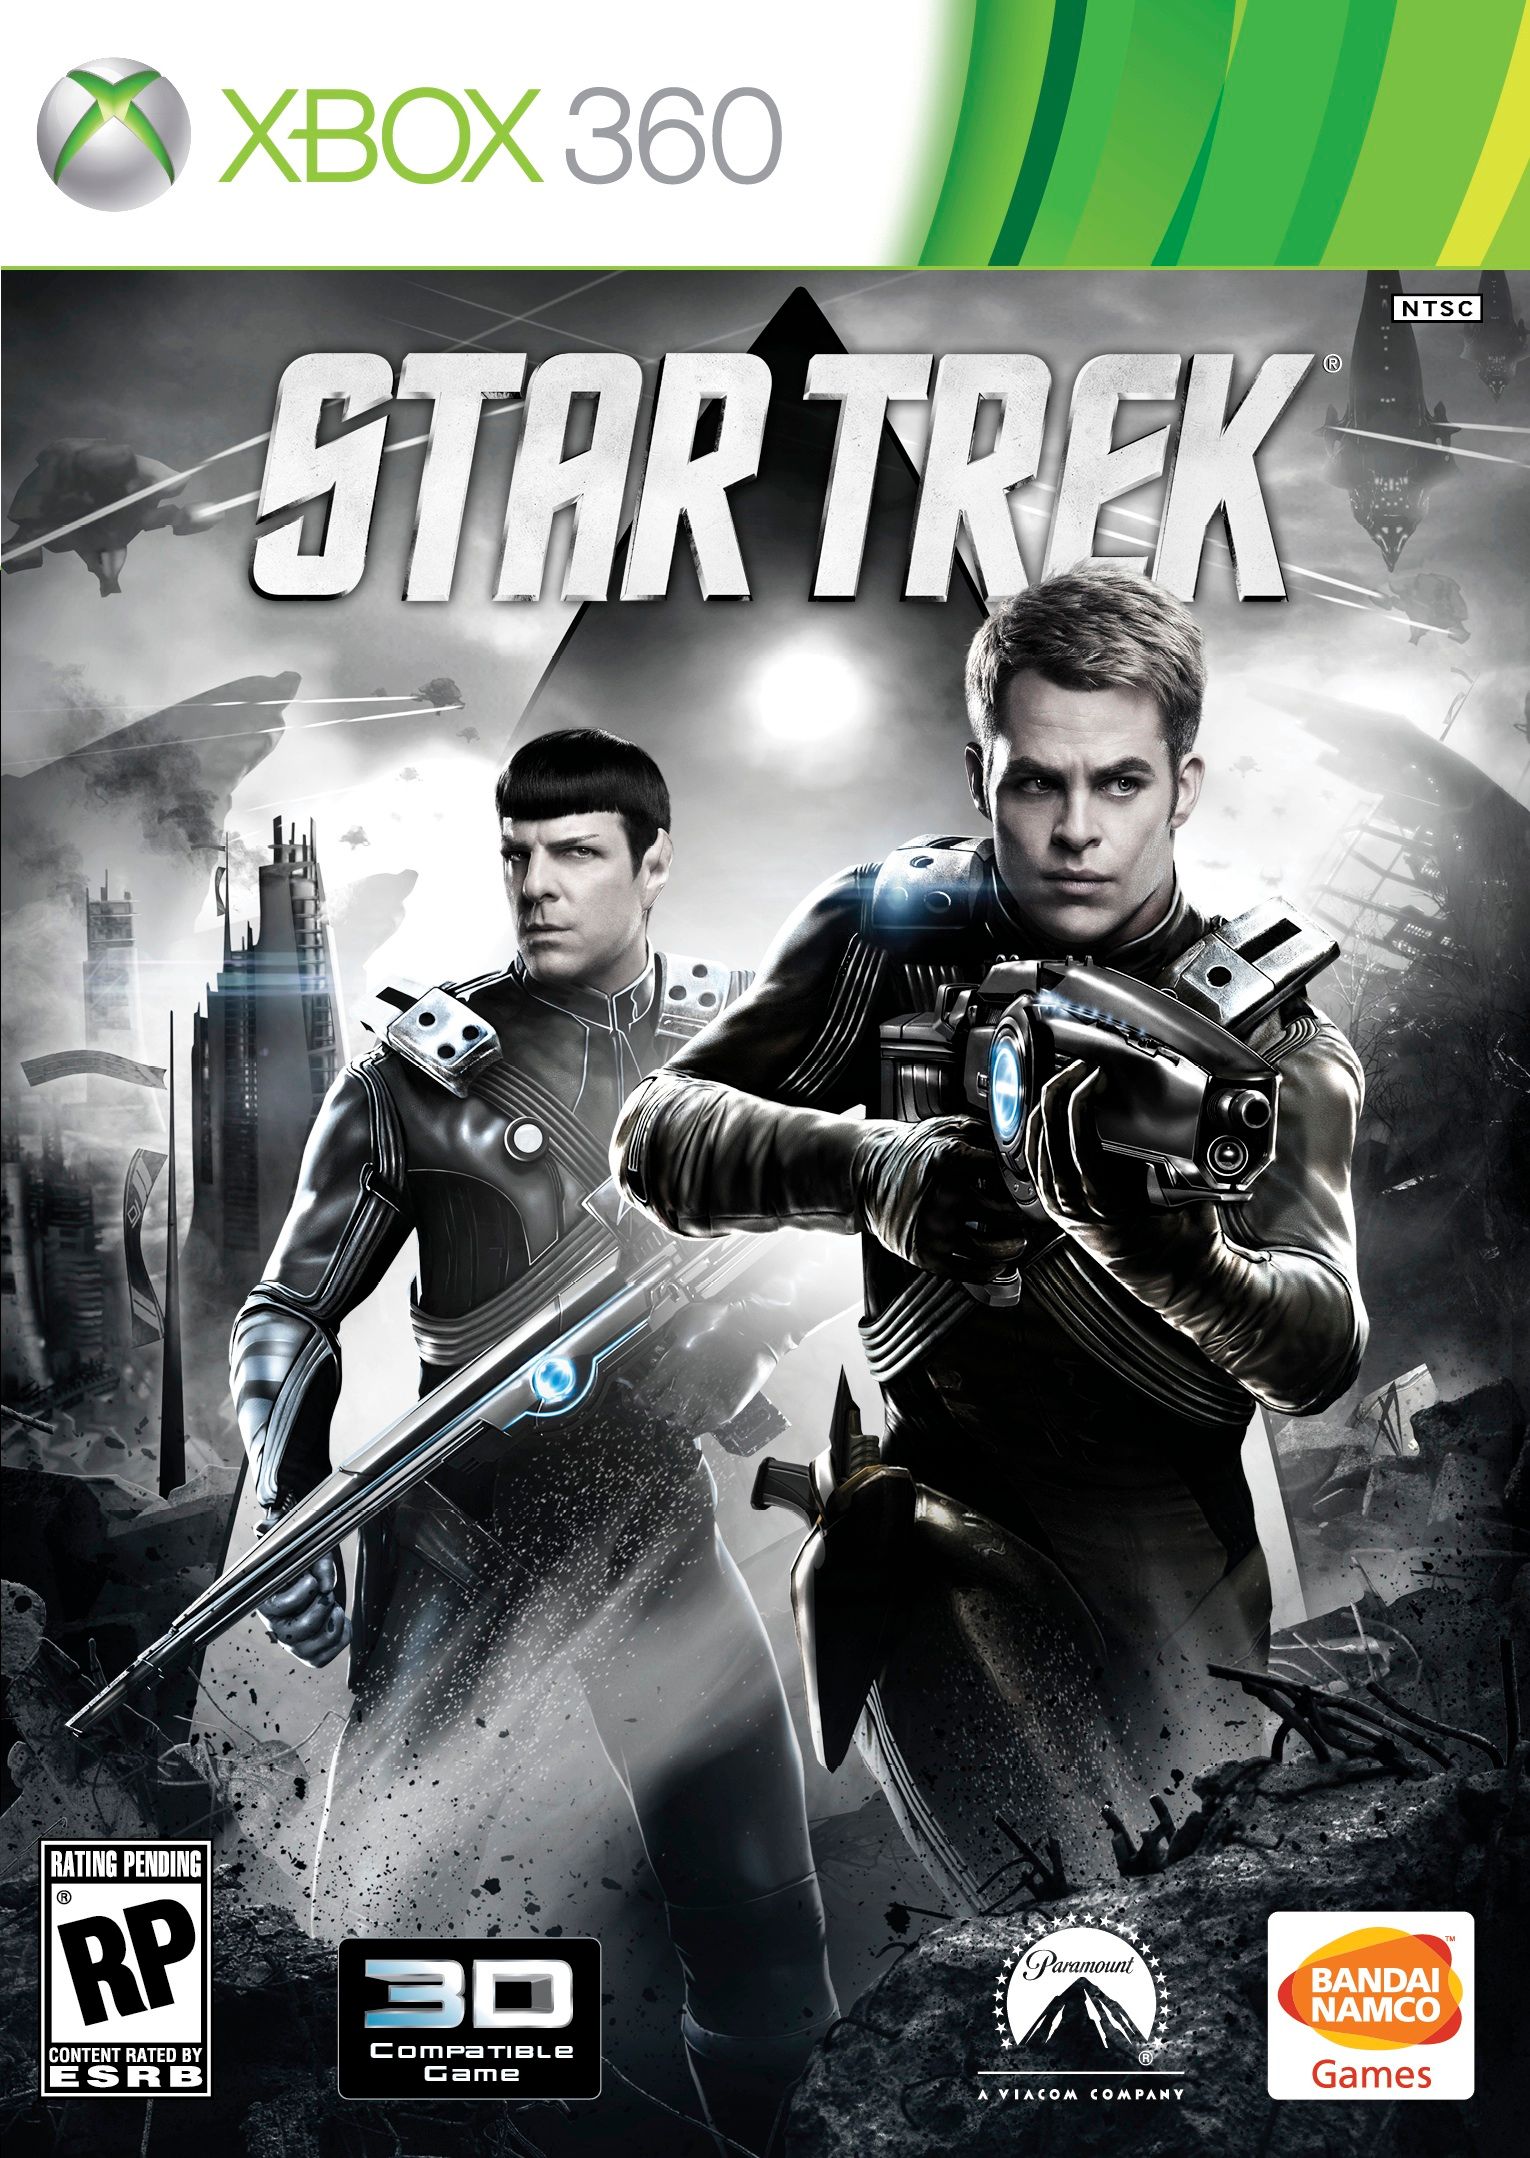 Star Trek The Video Game Cover Art 2